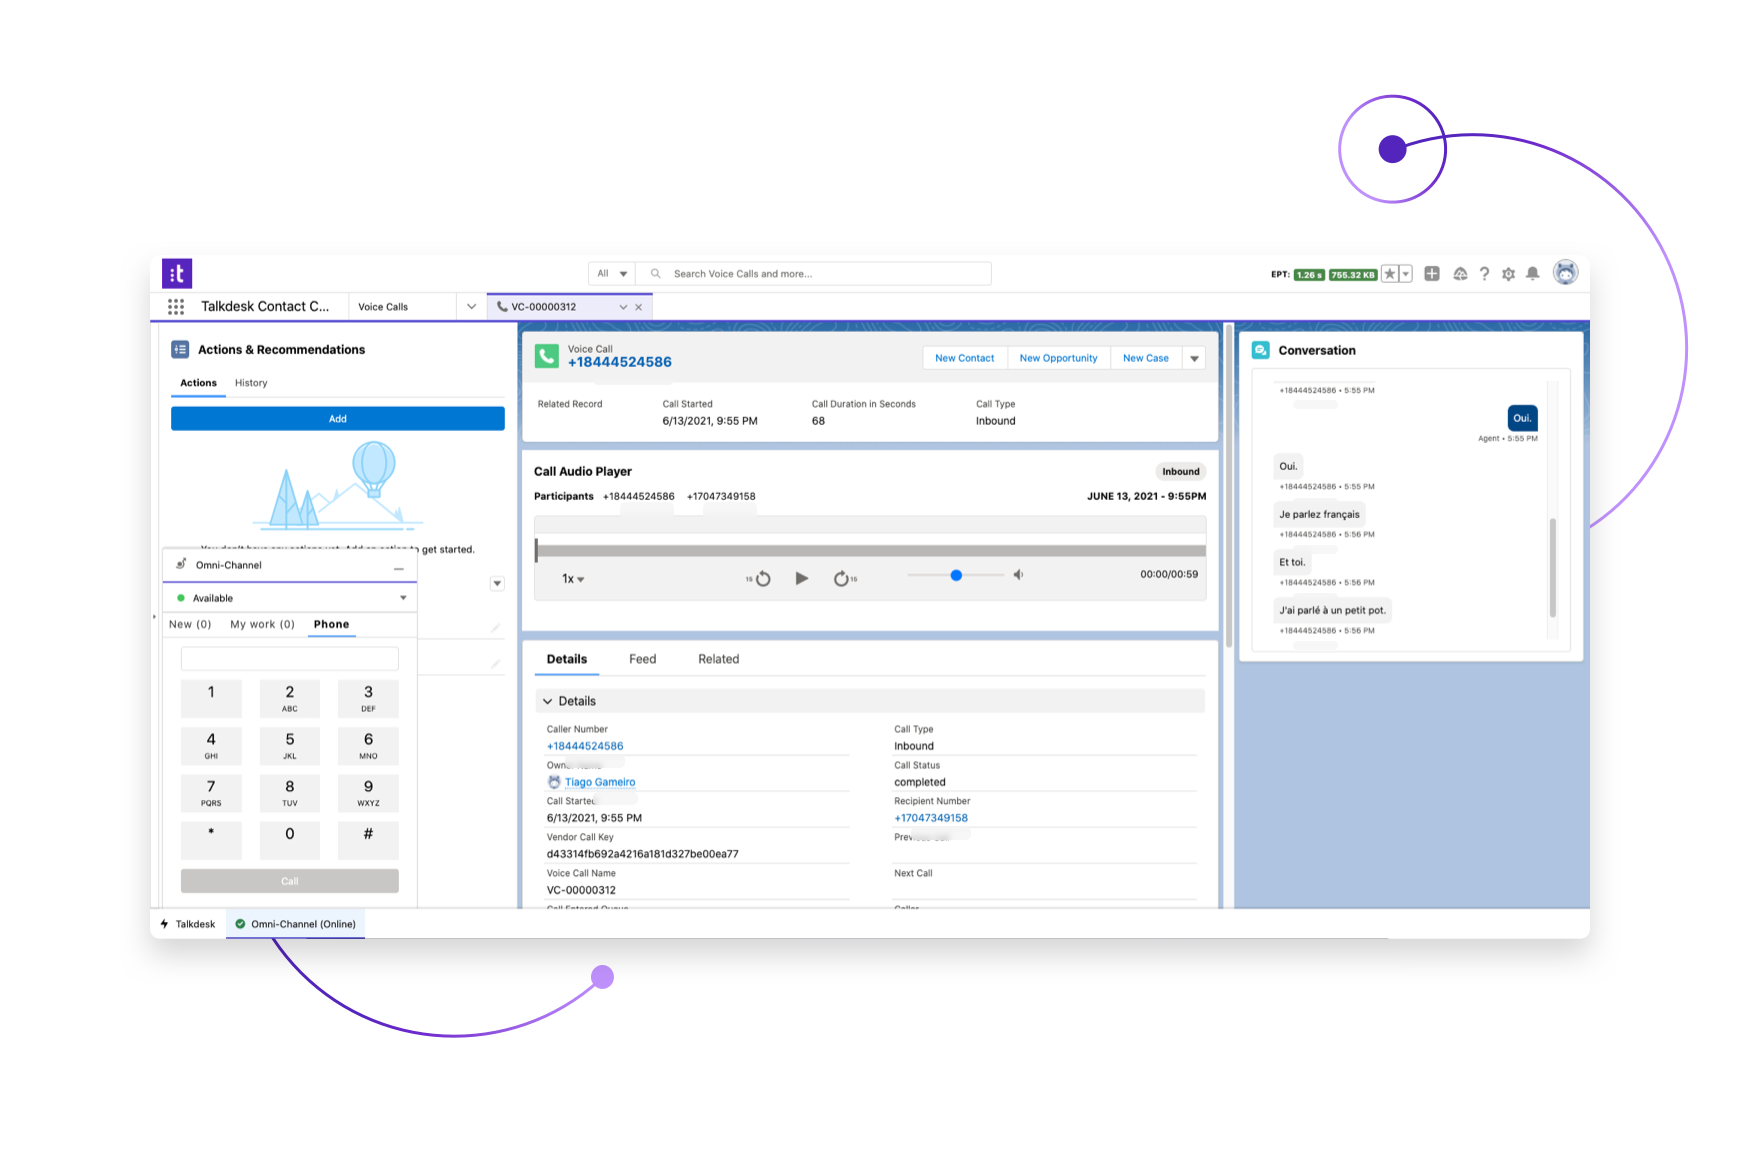 Améliorez votre CRM avec une fonctionnalité de centre de contact complète dans Salesforce grâce à Talkdesk for Salesforce.